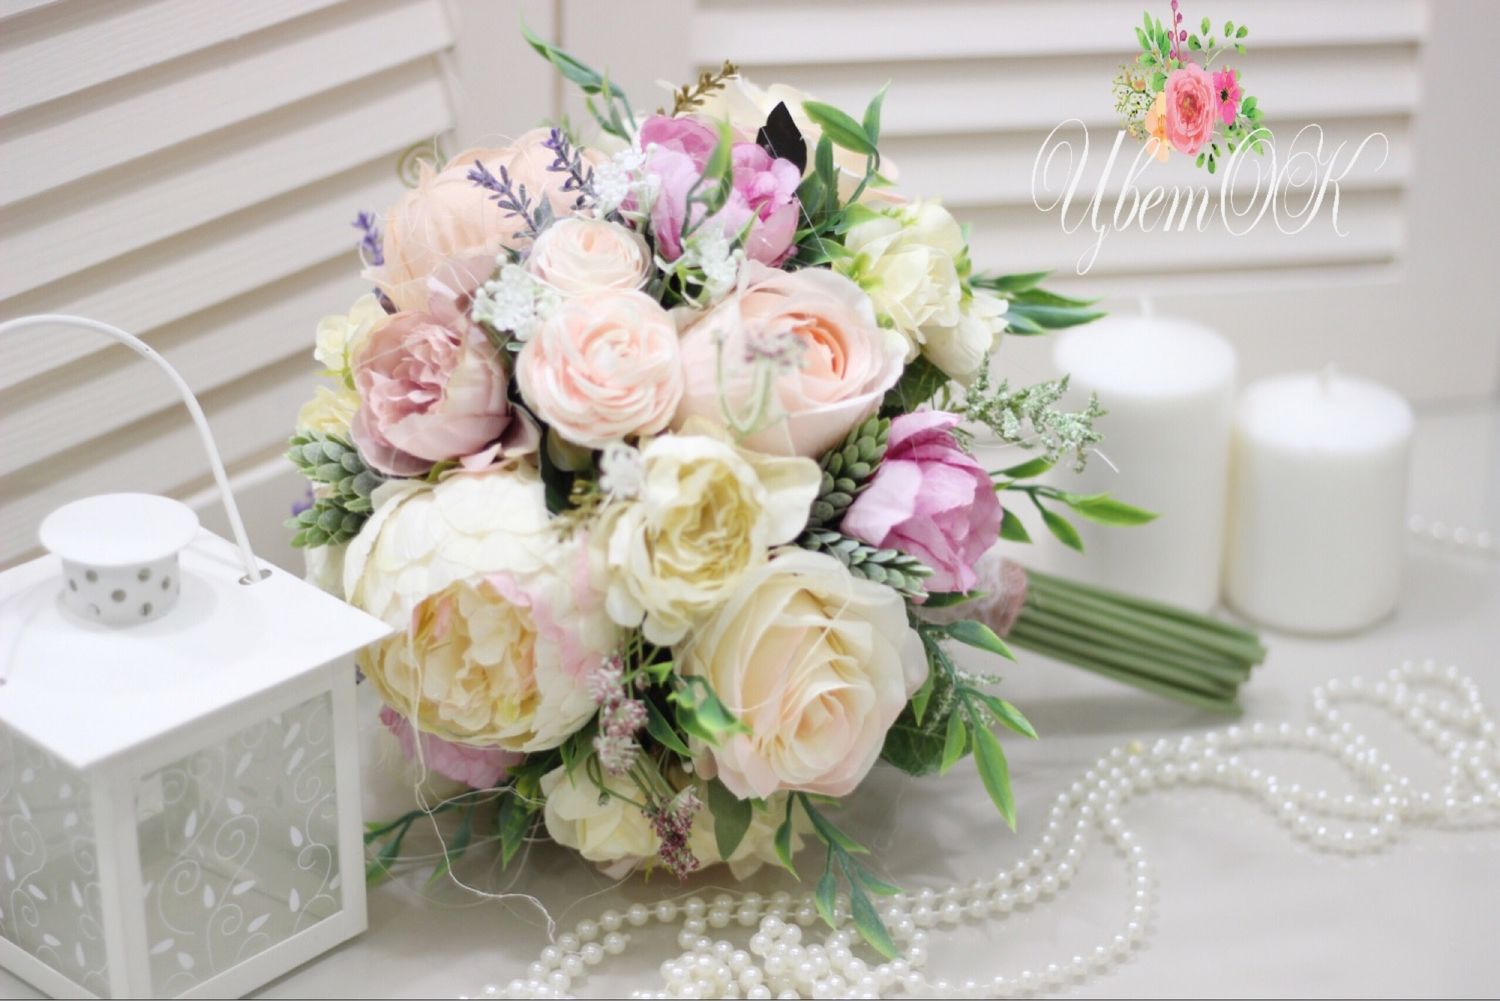 Какие цветы выбрать для свадьбы? Искусственные цветы или живые